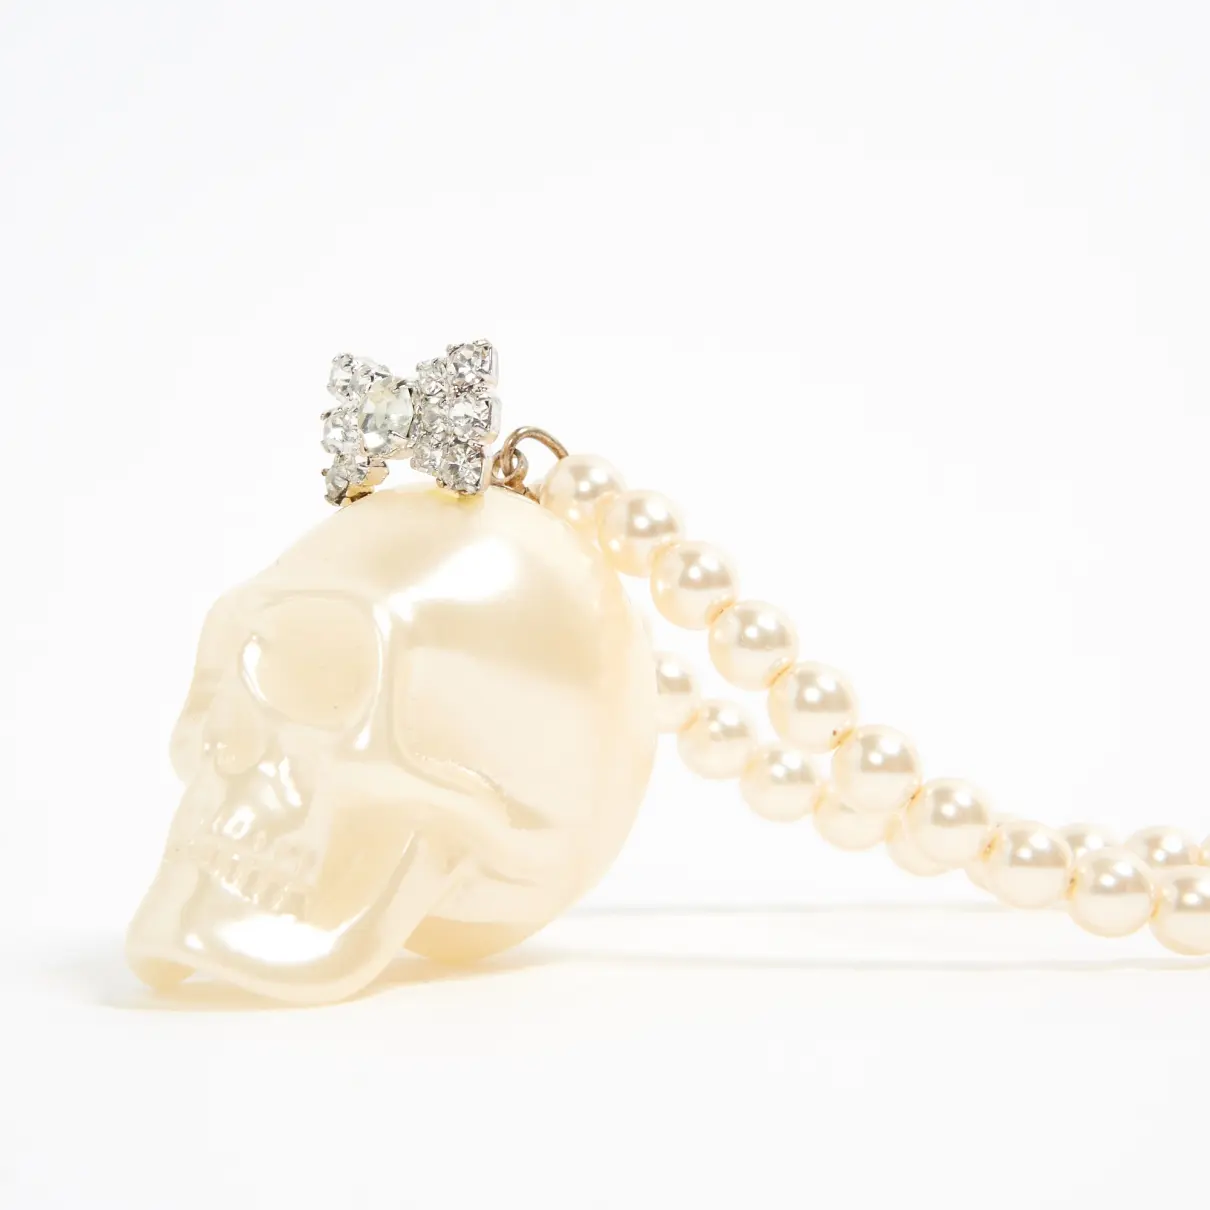 Les Bijoux De Sophie Pearls necklace for sale